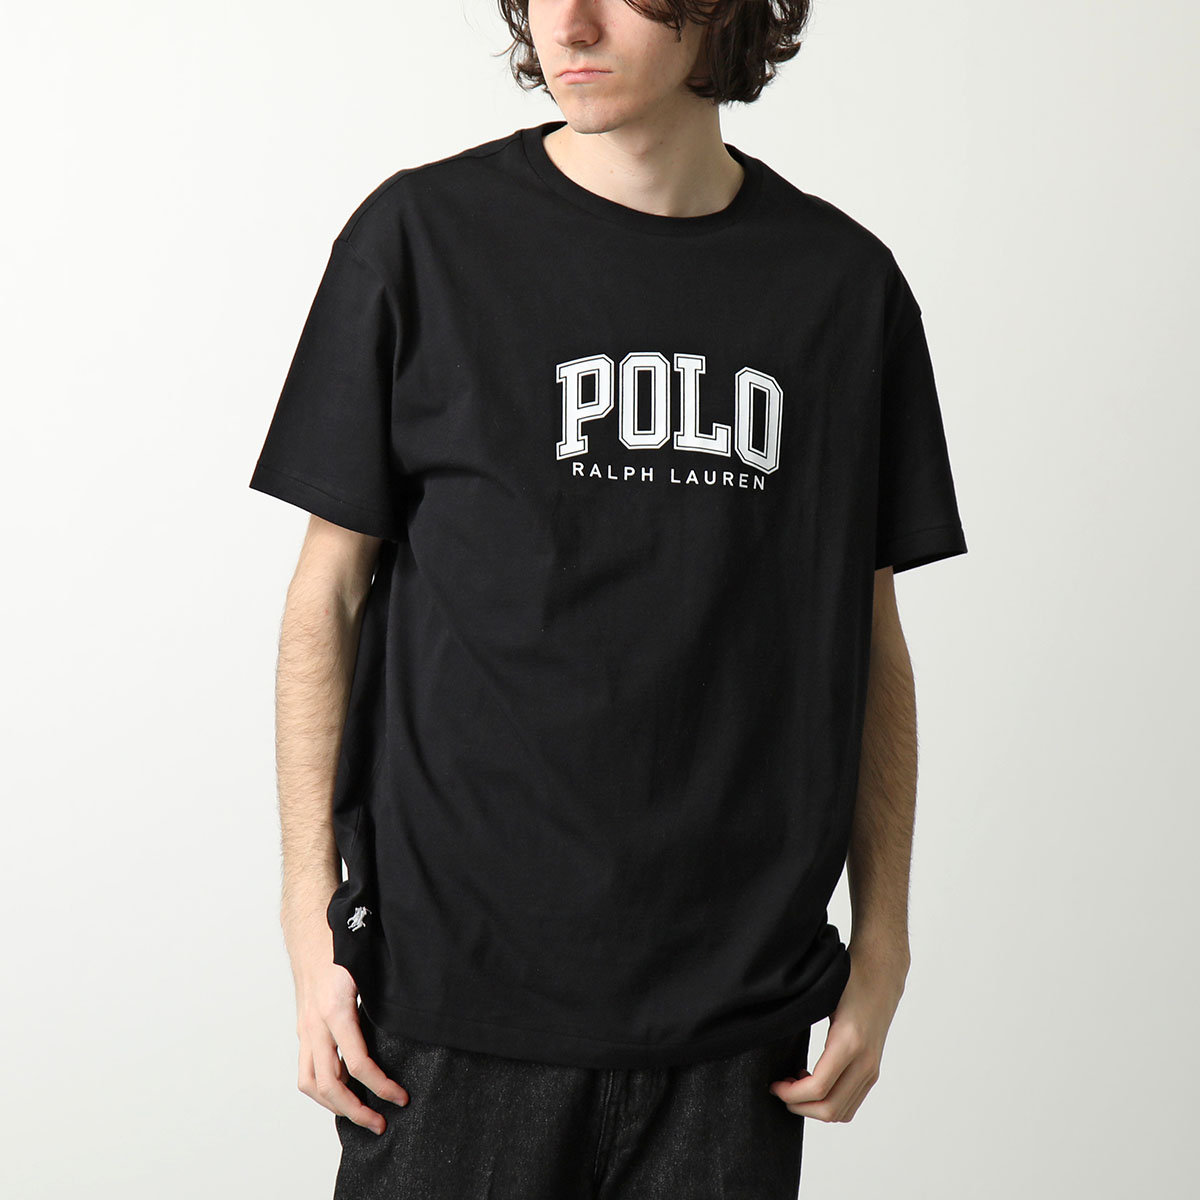 Polo Ralph Lauren ポロ ラルフローレン Tシャツ 710934714 メンズ ロゴ...